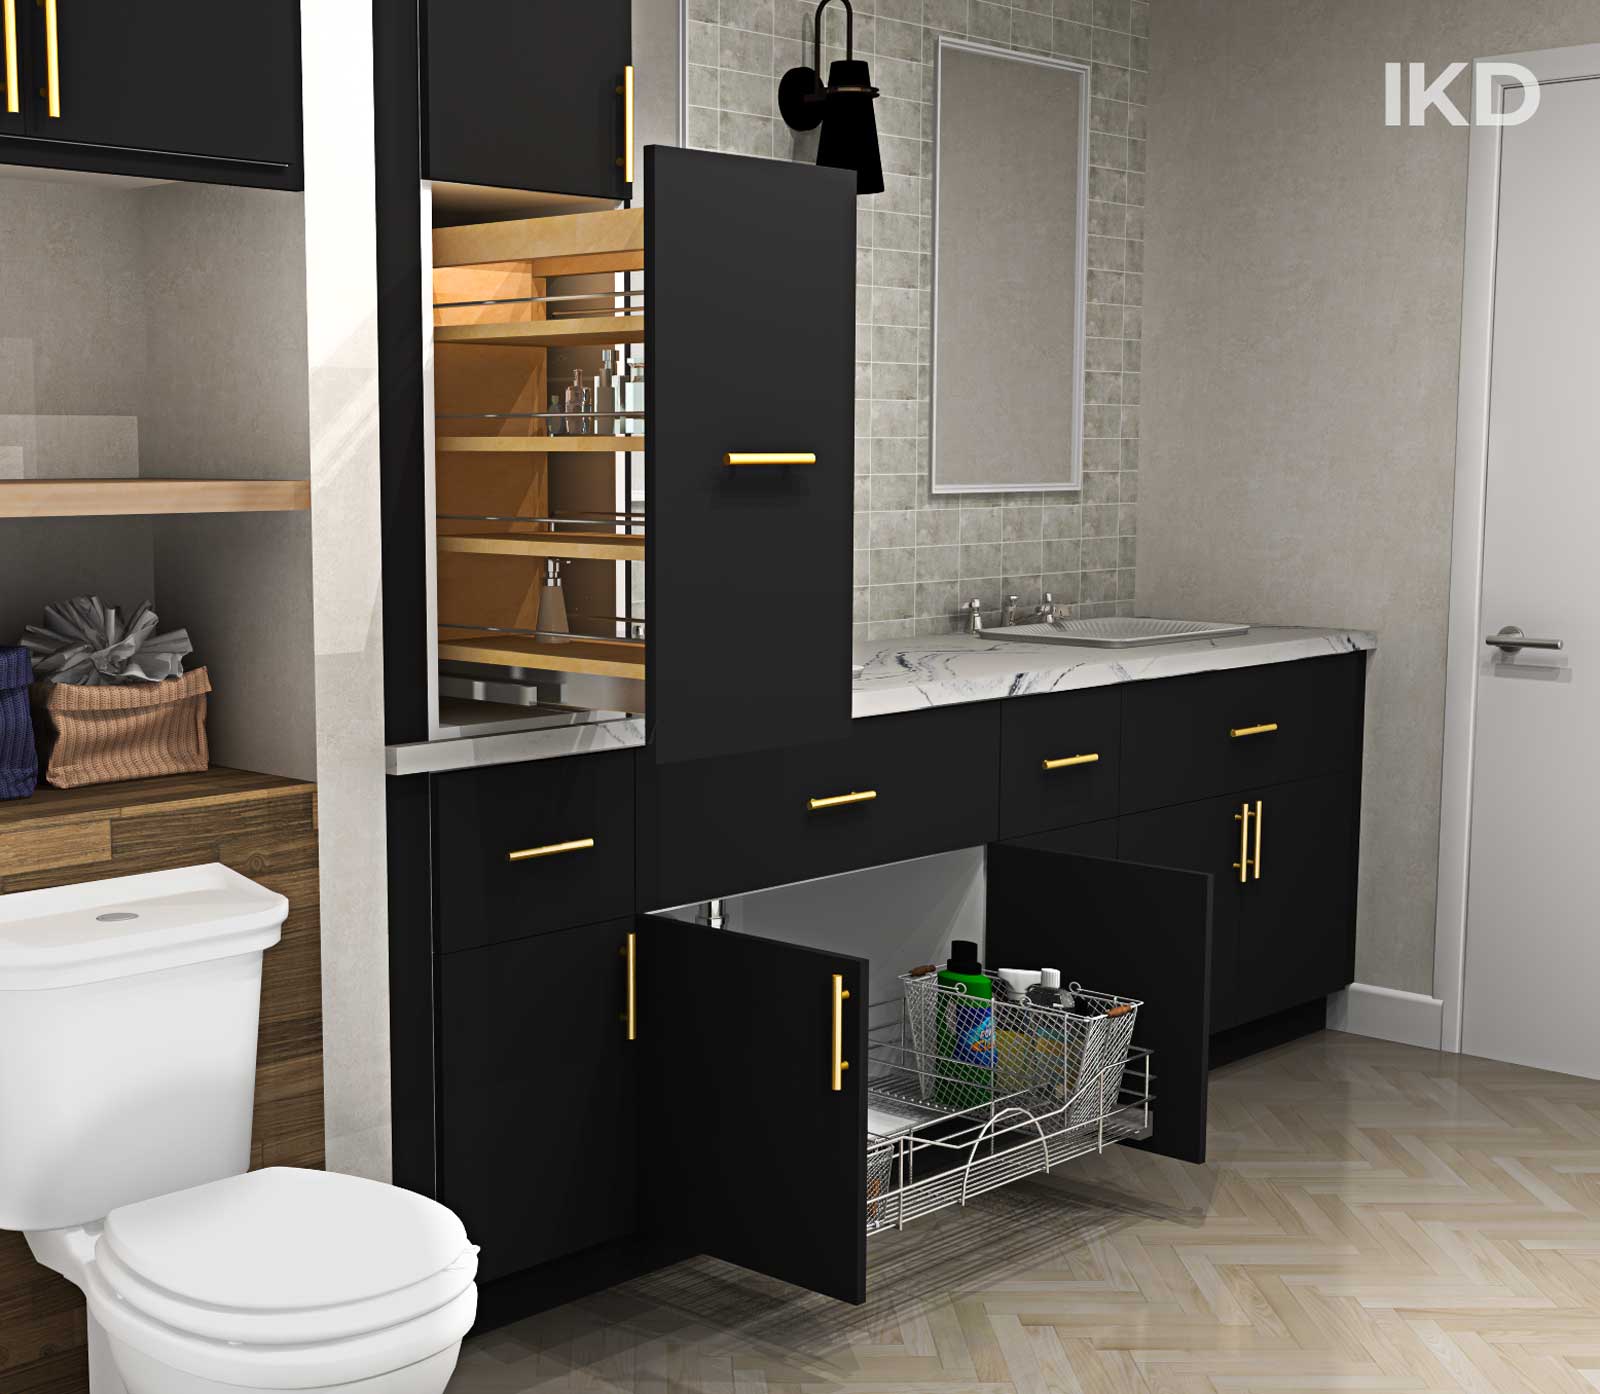 customizing IKEA bathroom cabinets